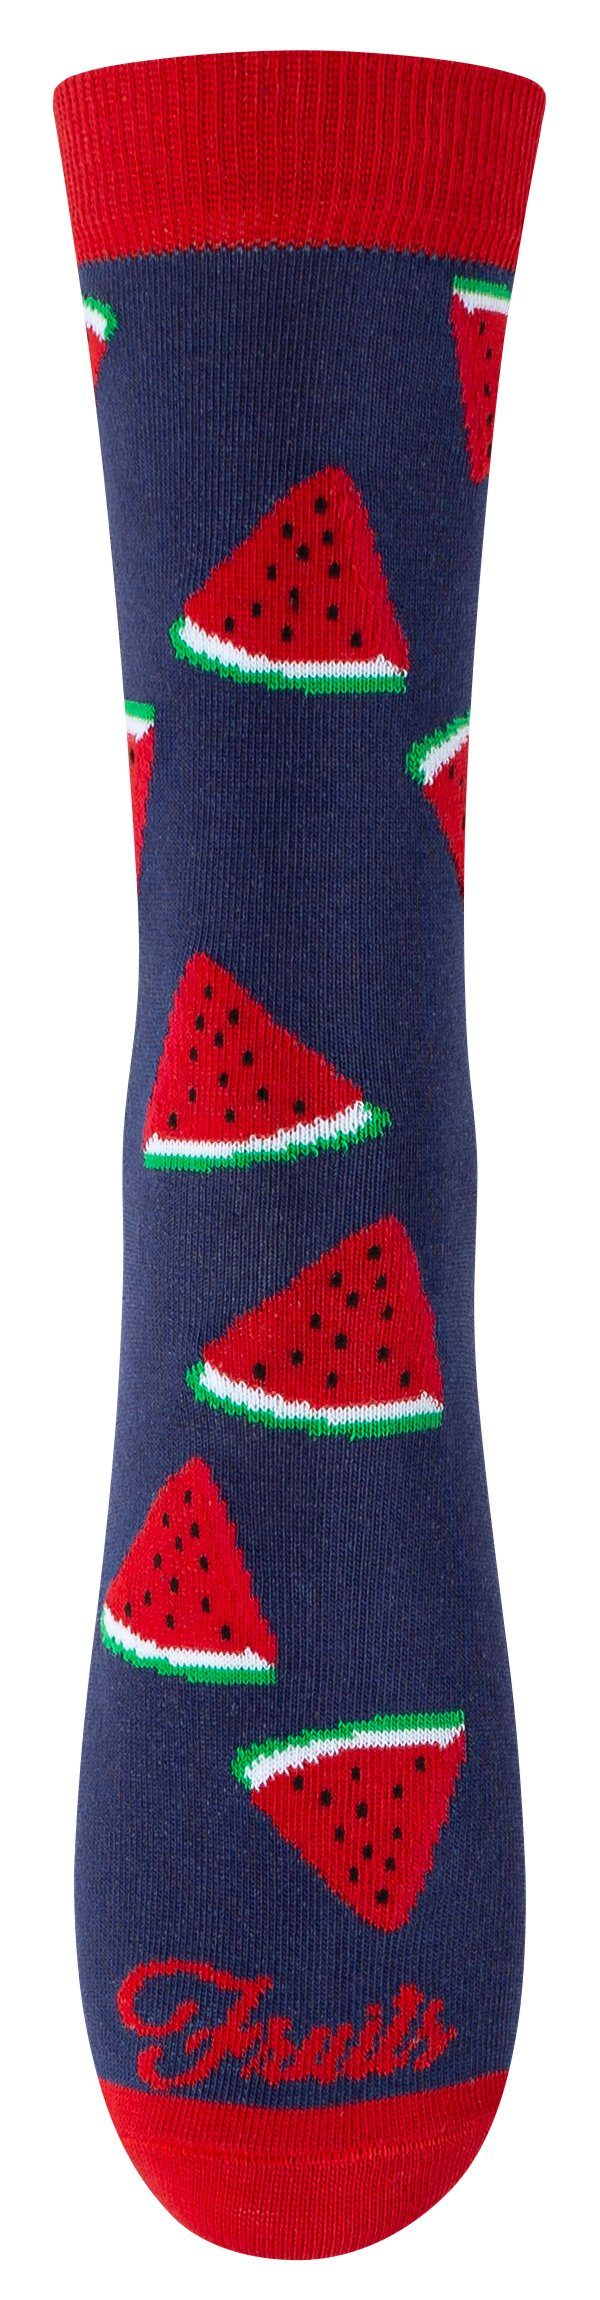 Baumwollqualität (3-Paar) Creation® Socken in Früchte angenehmer Design Vincent mit